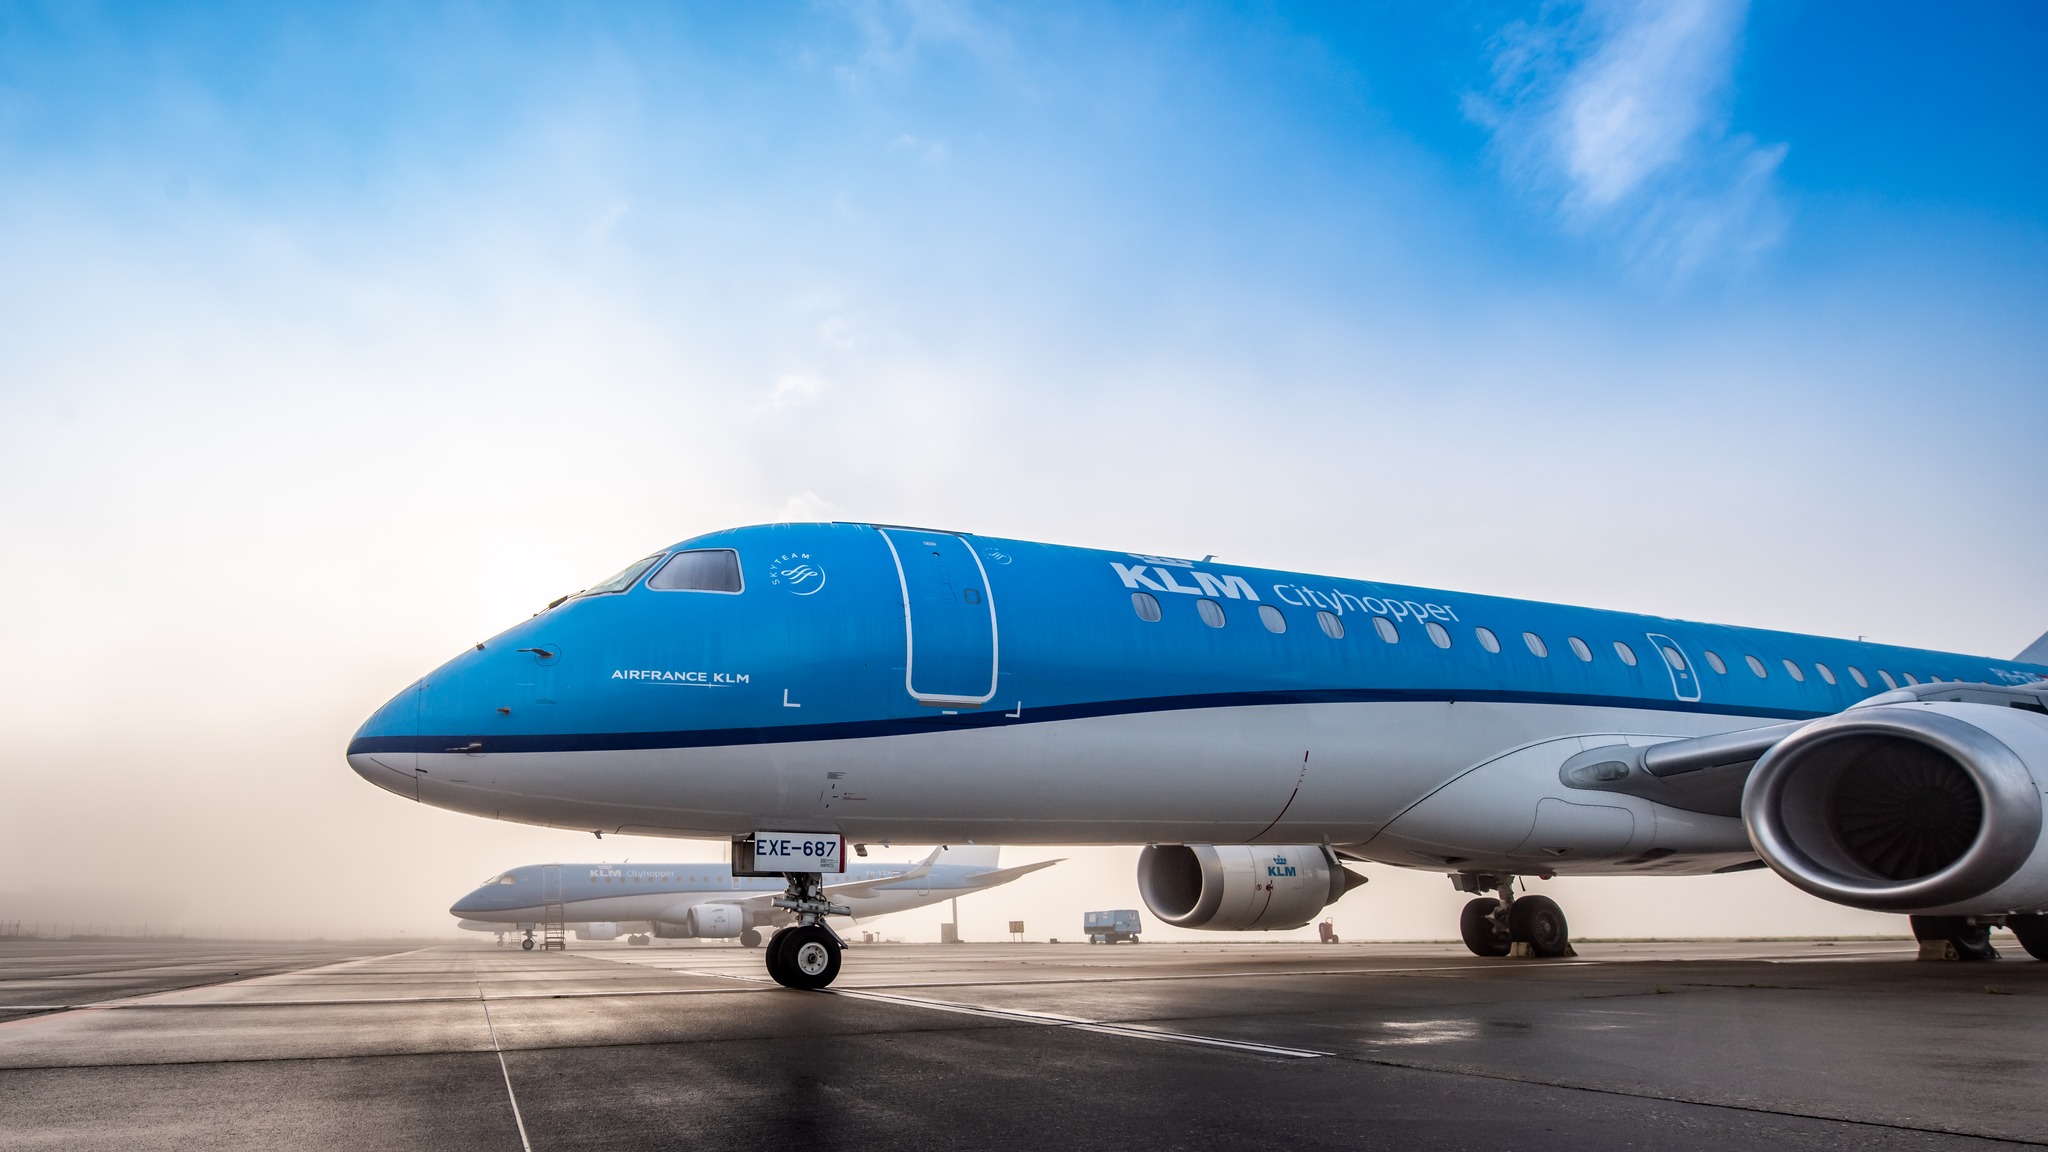     KLM fait appel à l’intelligence artificielle pour lutter contre le gaspillage alimentaire

